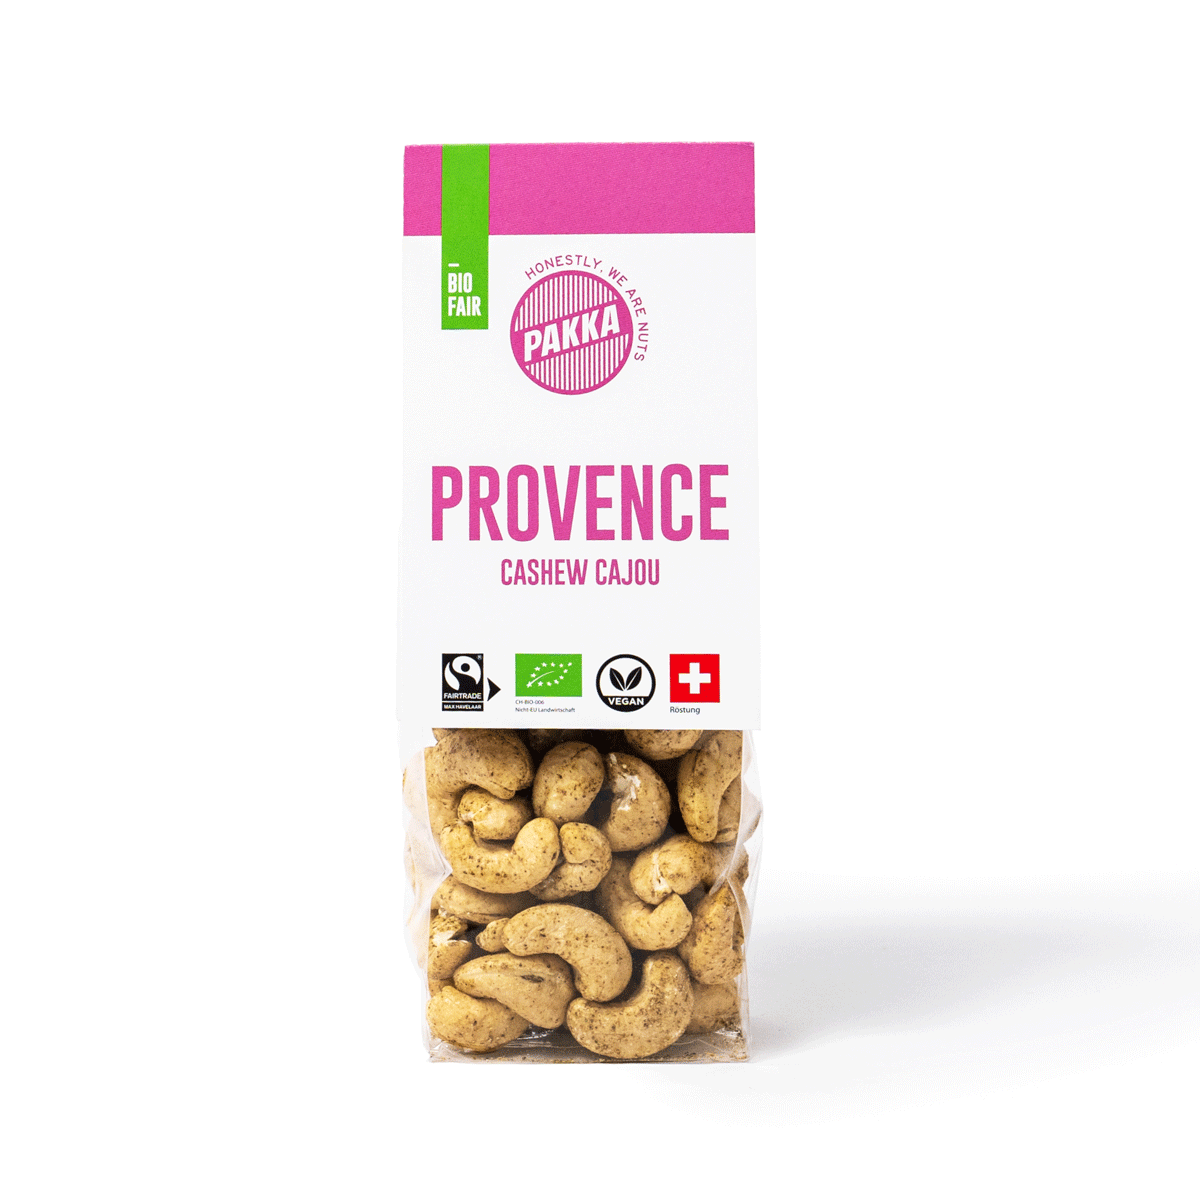 Cashew geröstet, à la Provençale